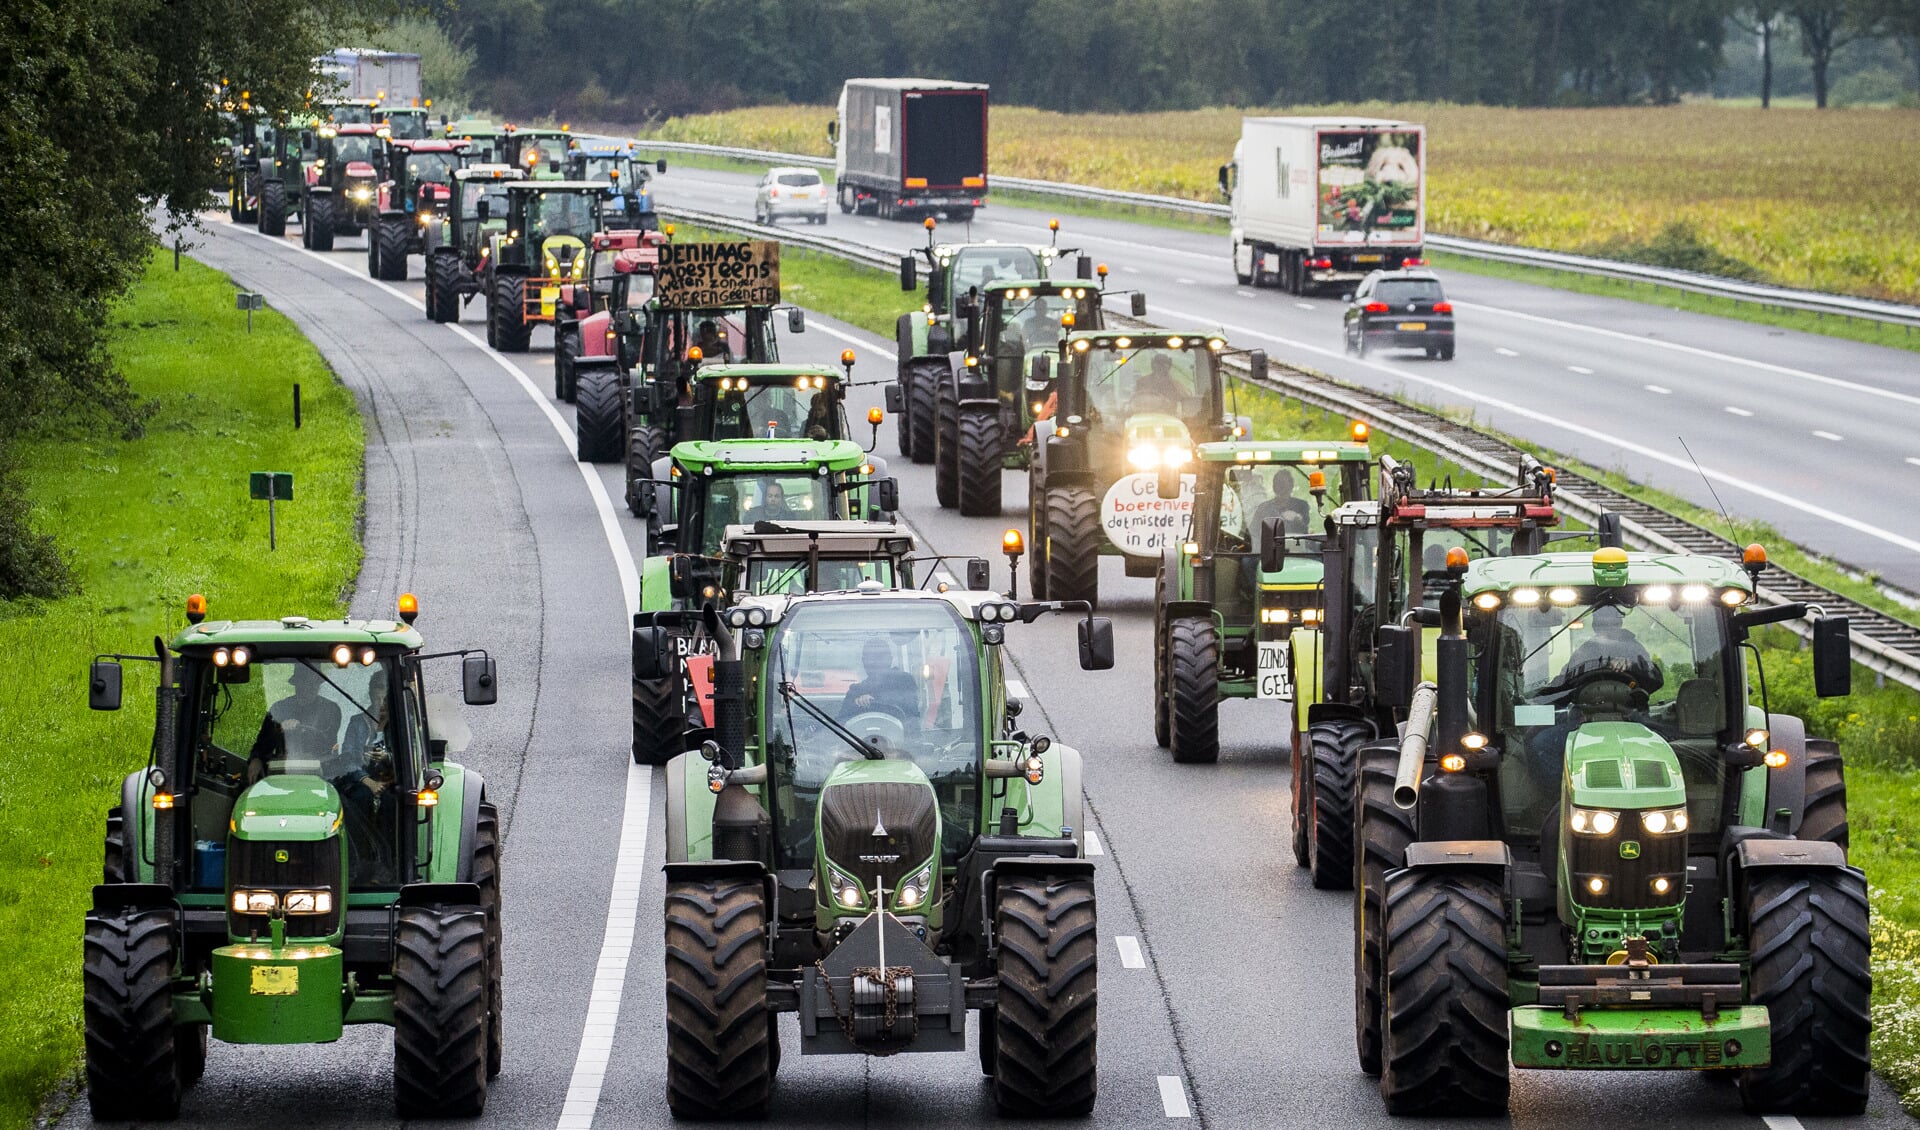 Protesterende boeren blokkeerden dinsdag de A28 tijdens hun tocht naar Den Haag.